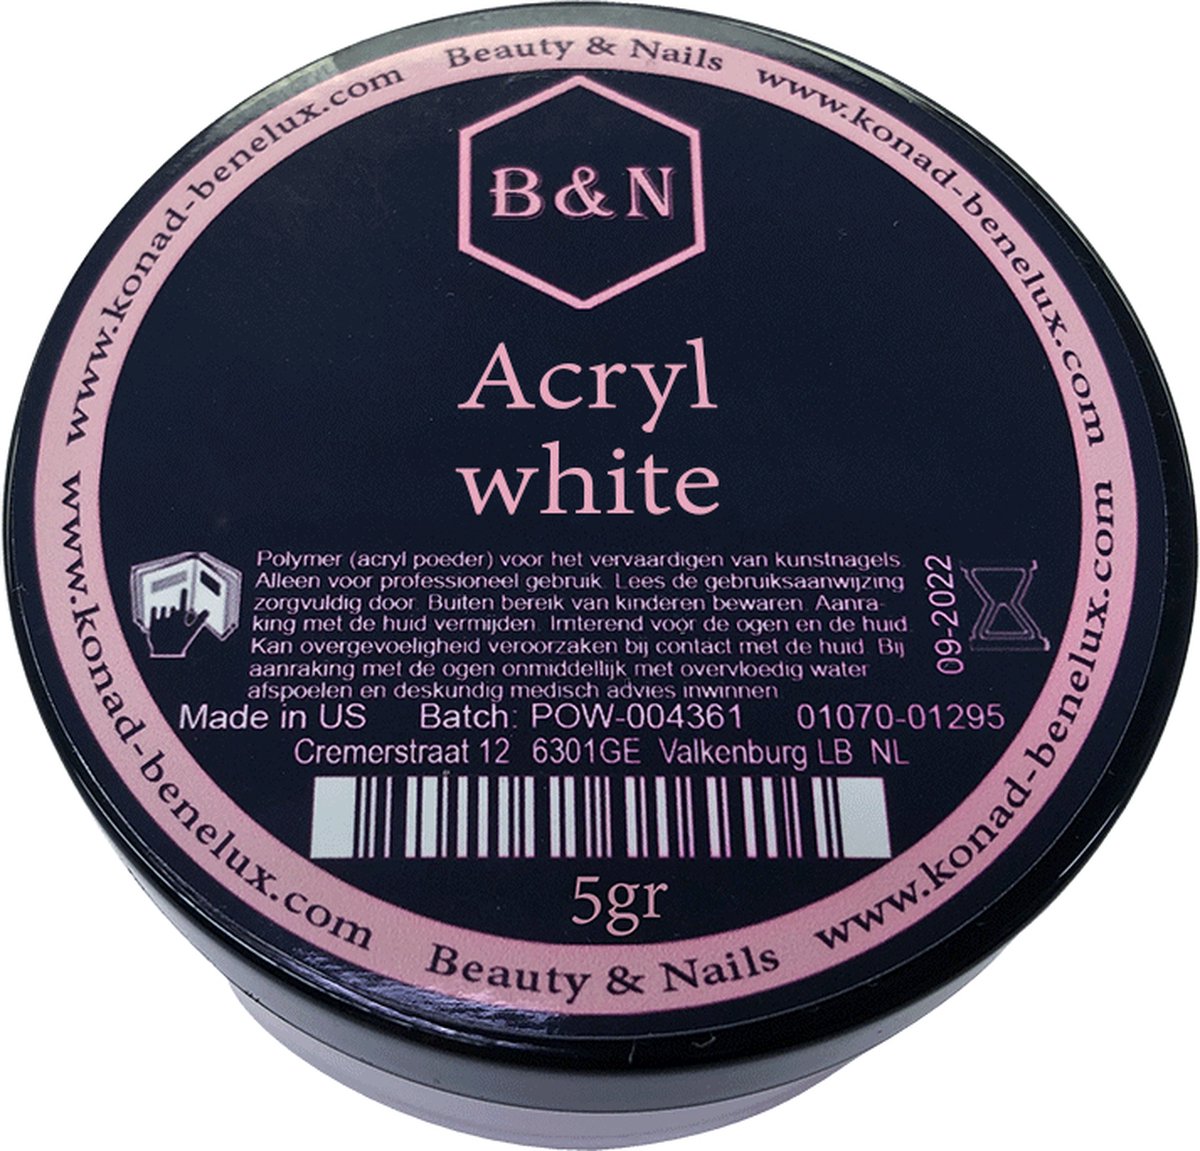 Acryl - white - 5 gr | B&N - acrylpoeder - VEGAN - acrylpoeder